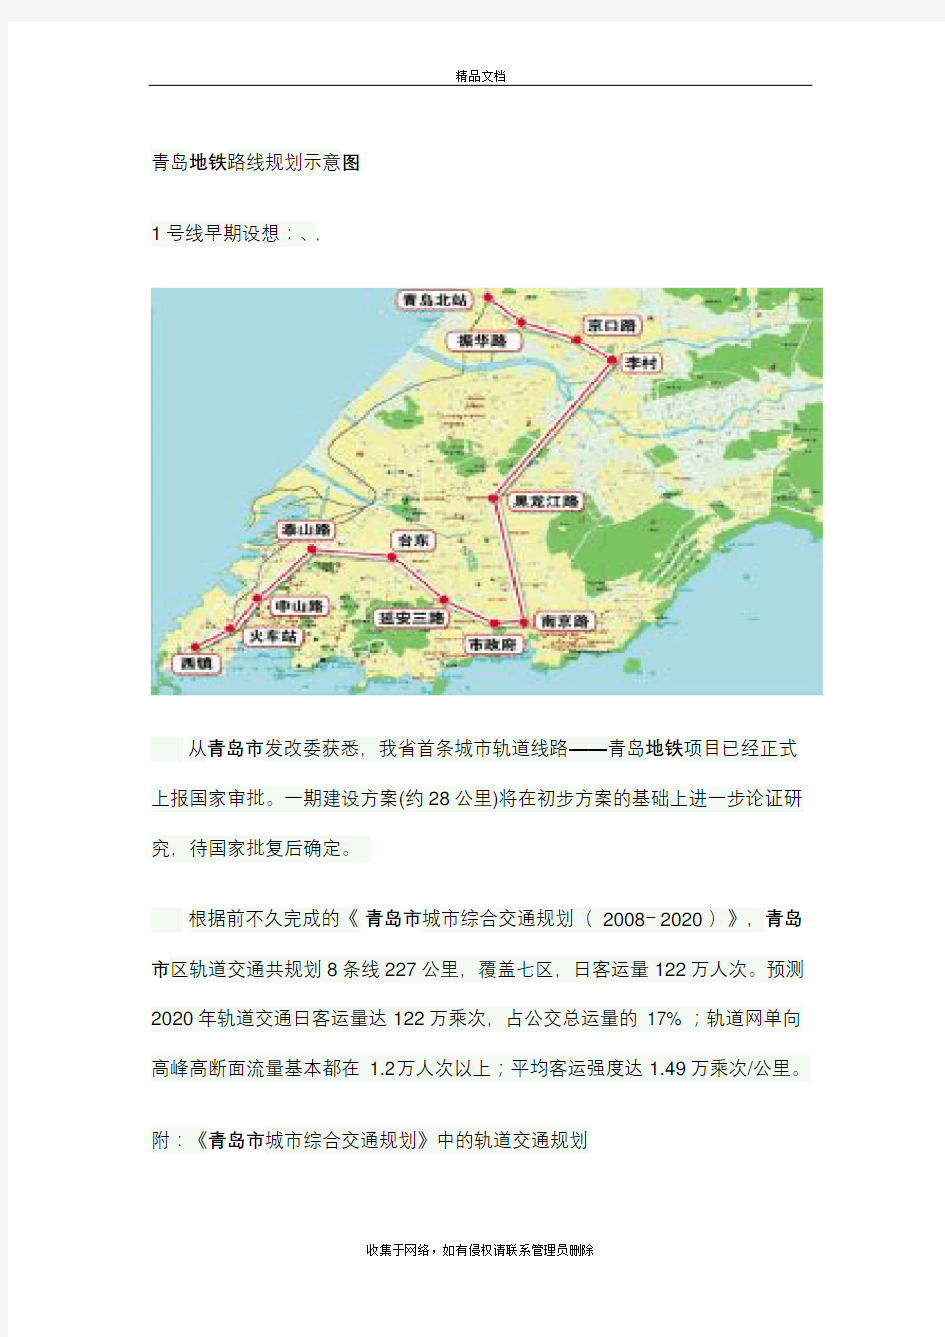 青岛地铁路线规划示意图教学文案